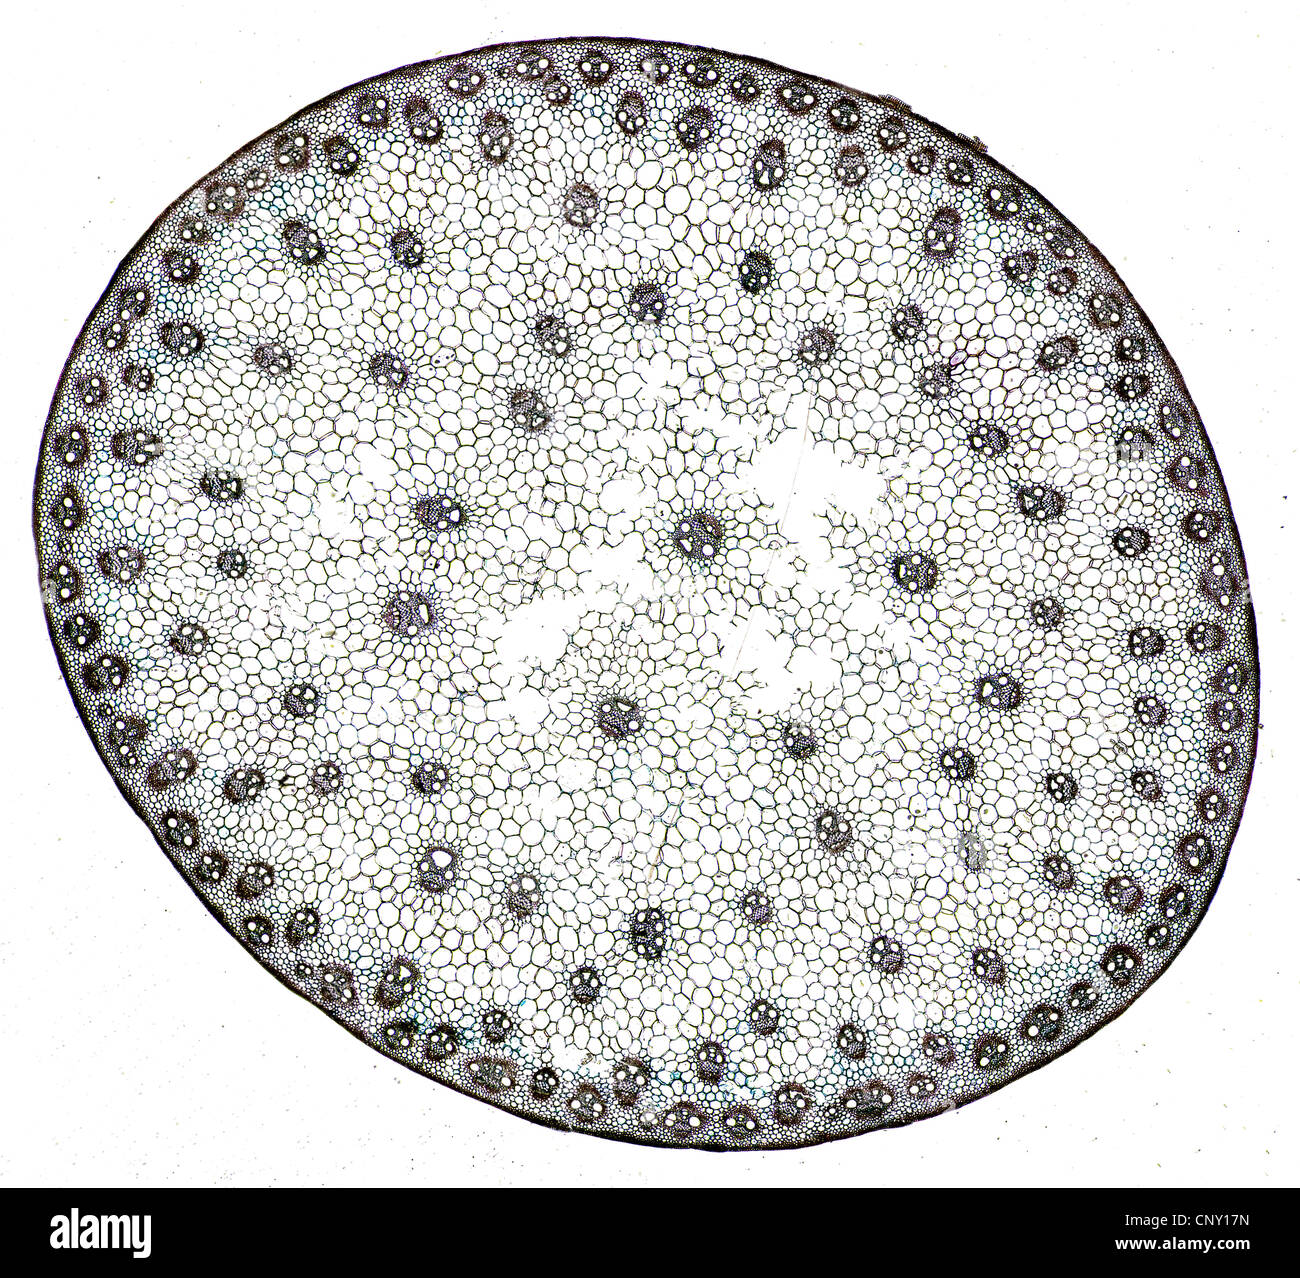 Coupe d'une tige de monocotylédone avec cellules et éléments clairement visibles Banque D'Images